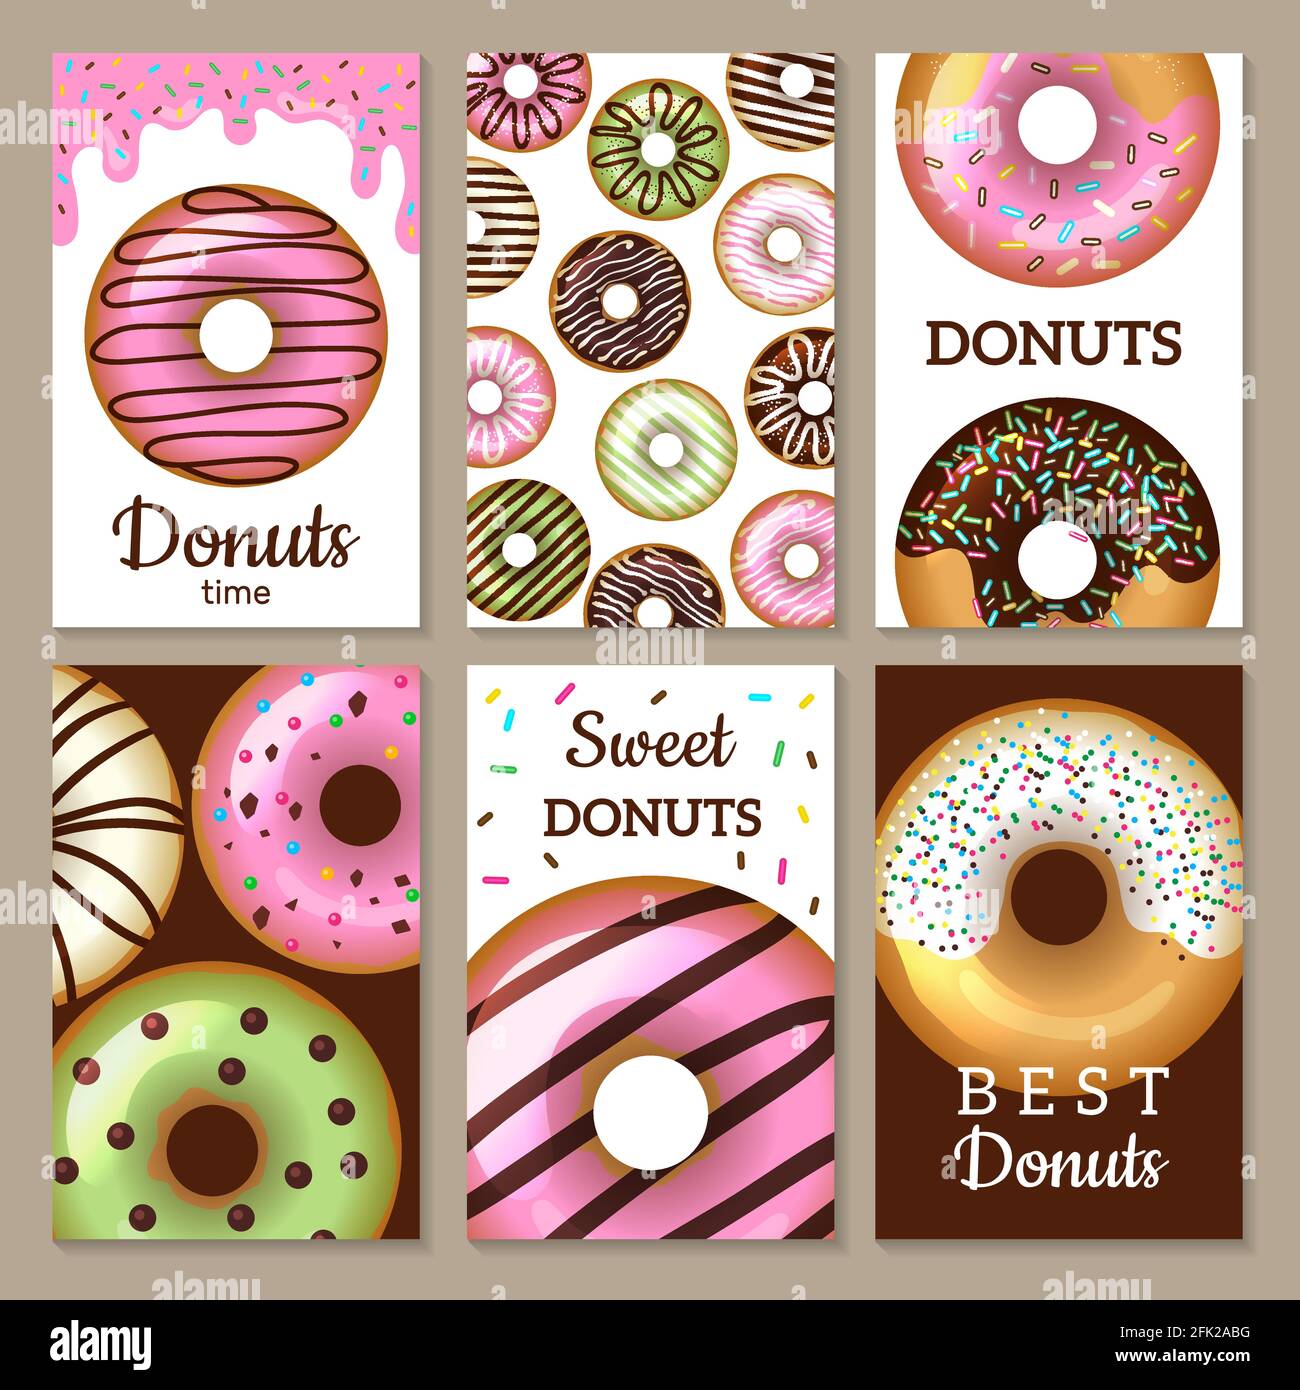 Donuts Karten Design. Süßigkeiten farbige Hintergründe mit glasierten runden Kuchen Lebensmittel strukturierte Vorlagen Vektor Stock Vektor